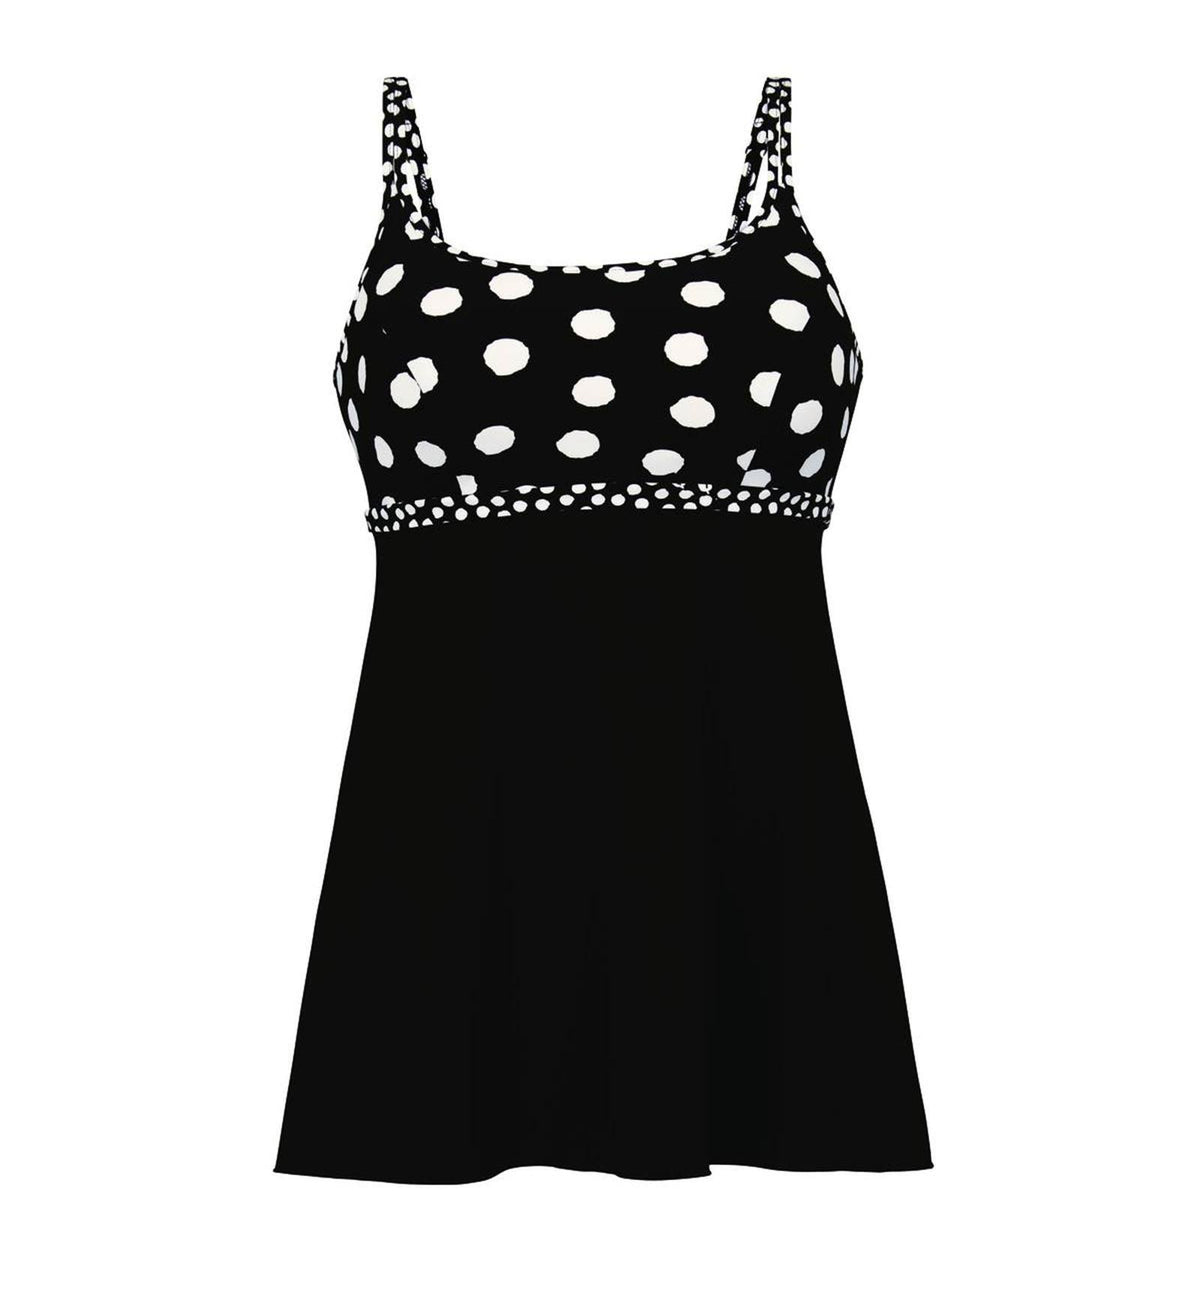 Anita Care Summer Dot Jena Flowy Swim Tankini Top (6584-1),32D,Black/White - Black/White,32D